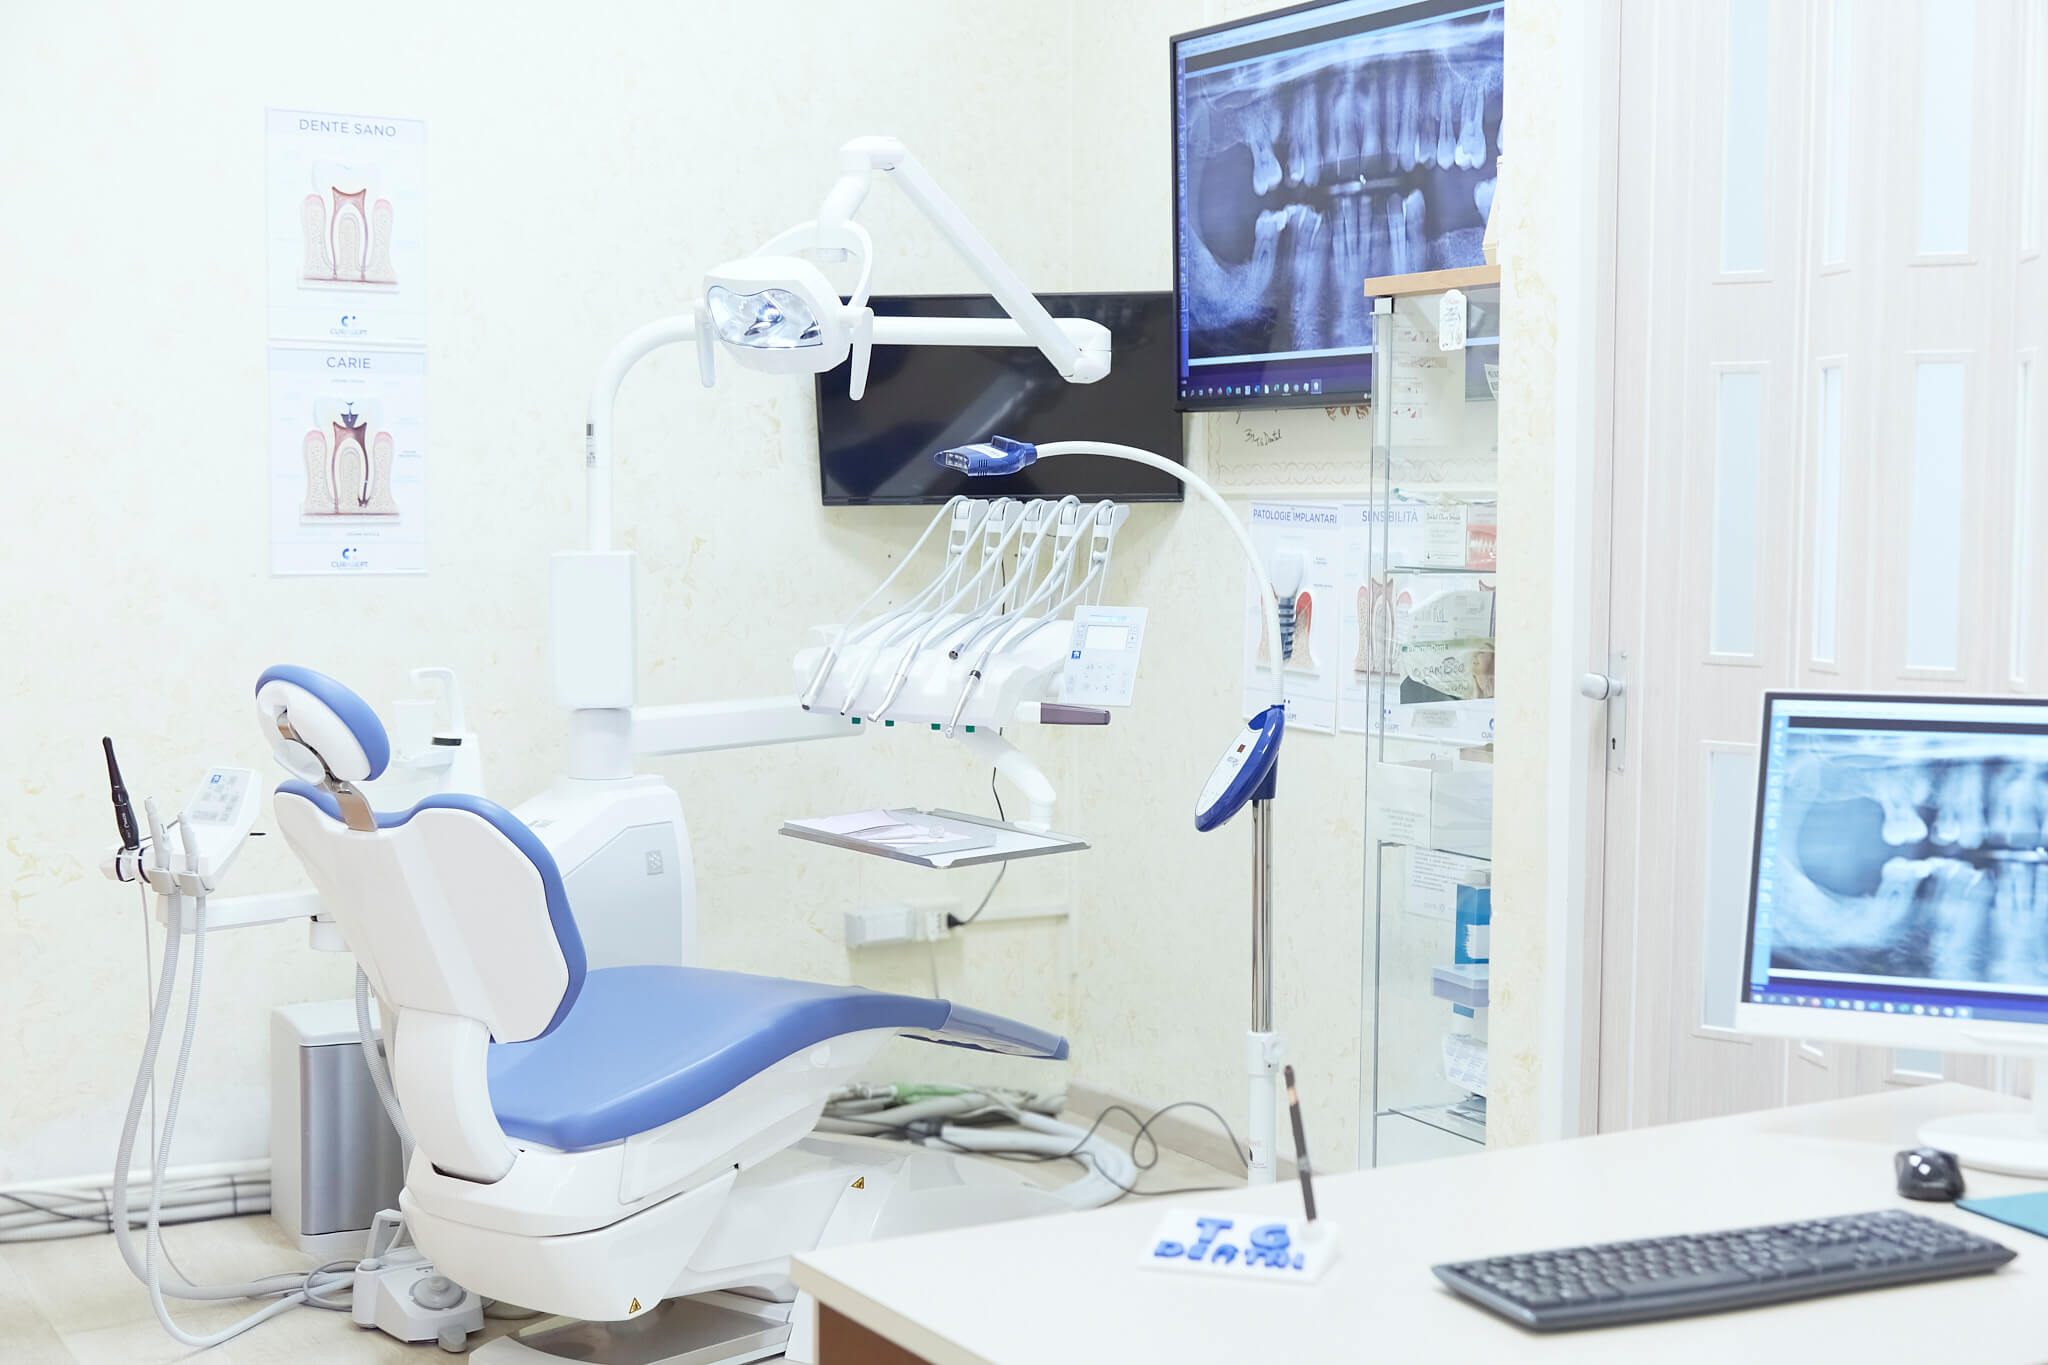 studio dentistico tg dental roma dentista finocchio borghesiana gnatologia radiografia